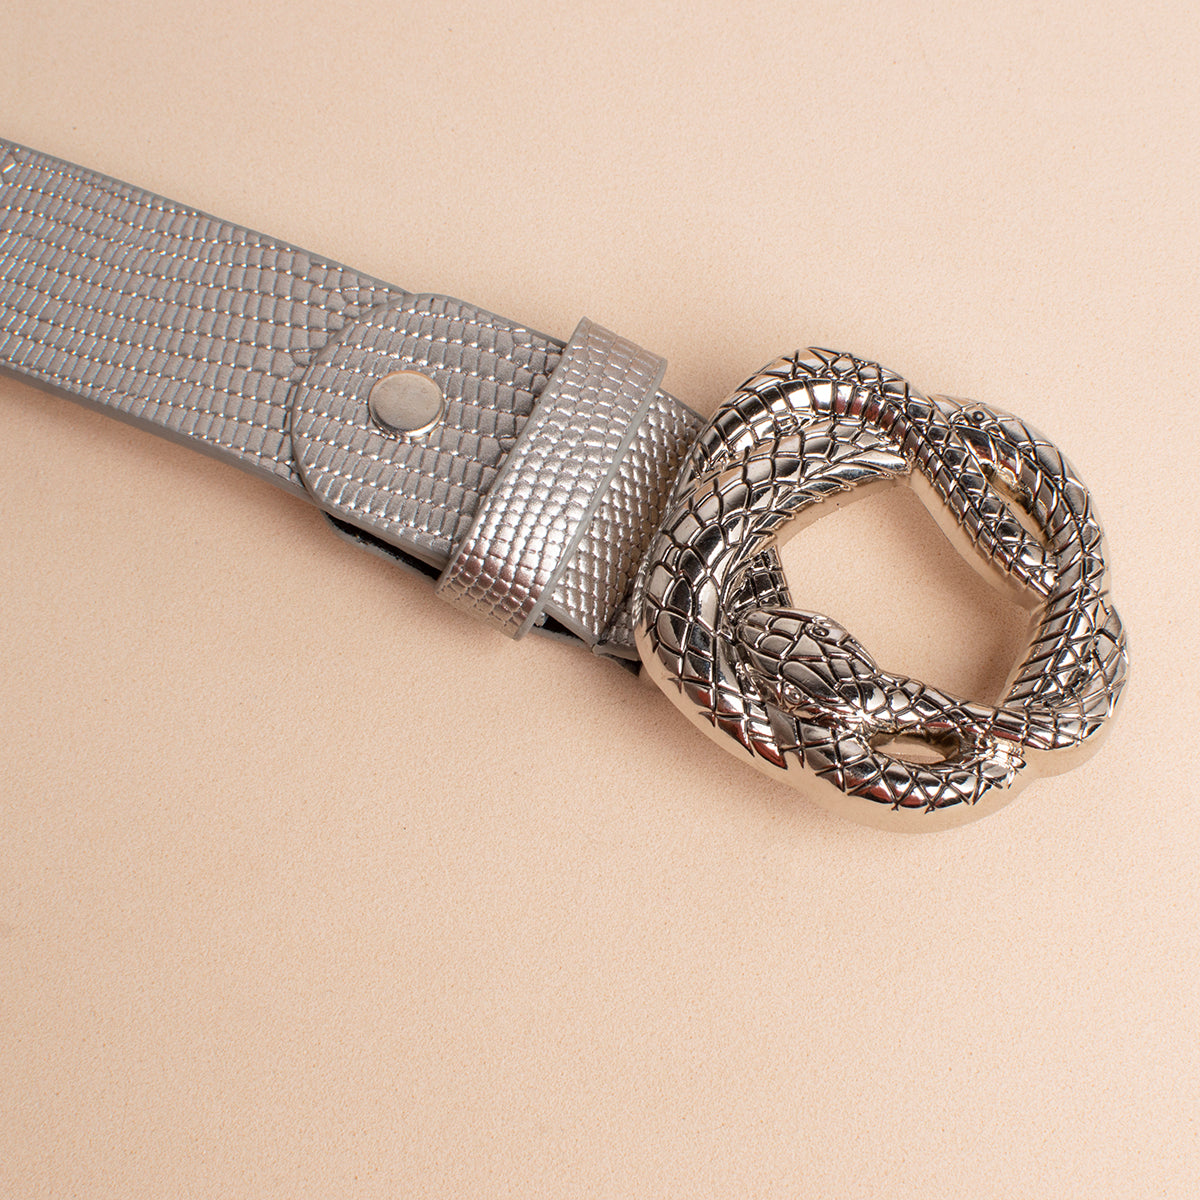 Cinturón color plata con herraje de serpiente